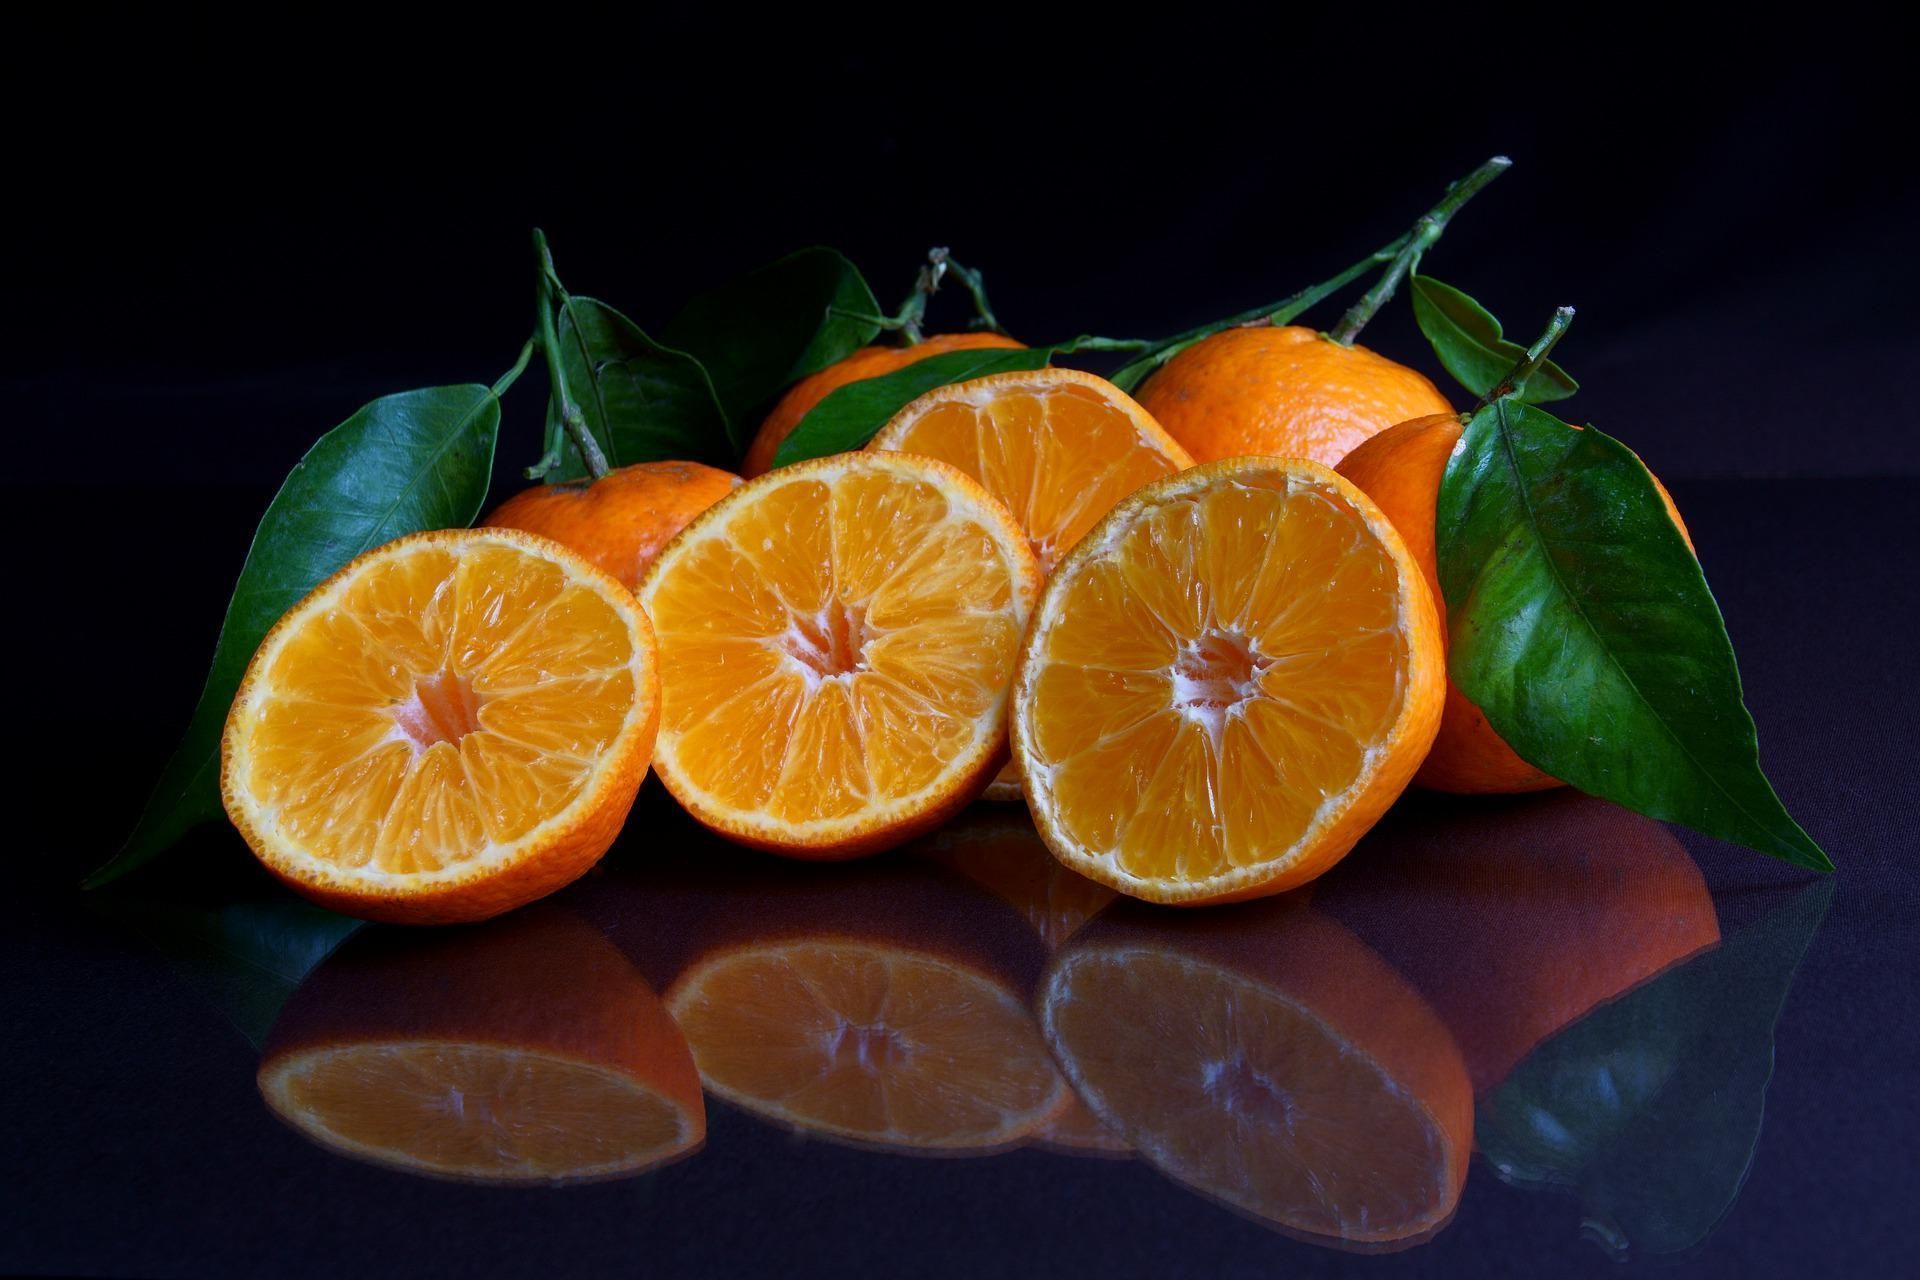 Laranjas e tangerinas, deliciosa porção de saúde